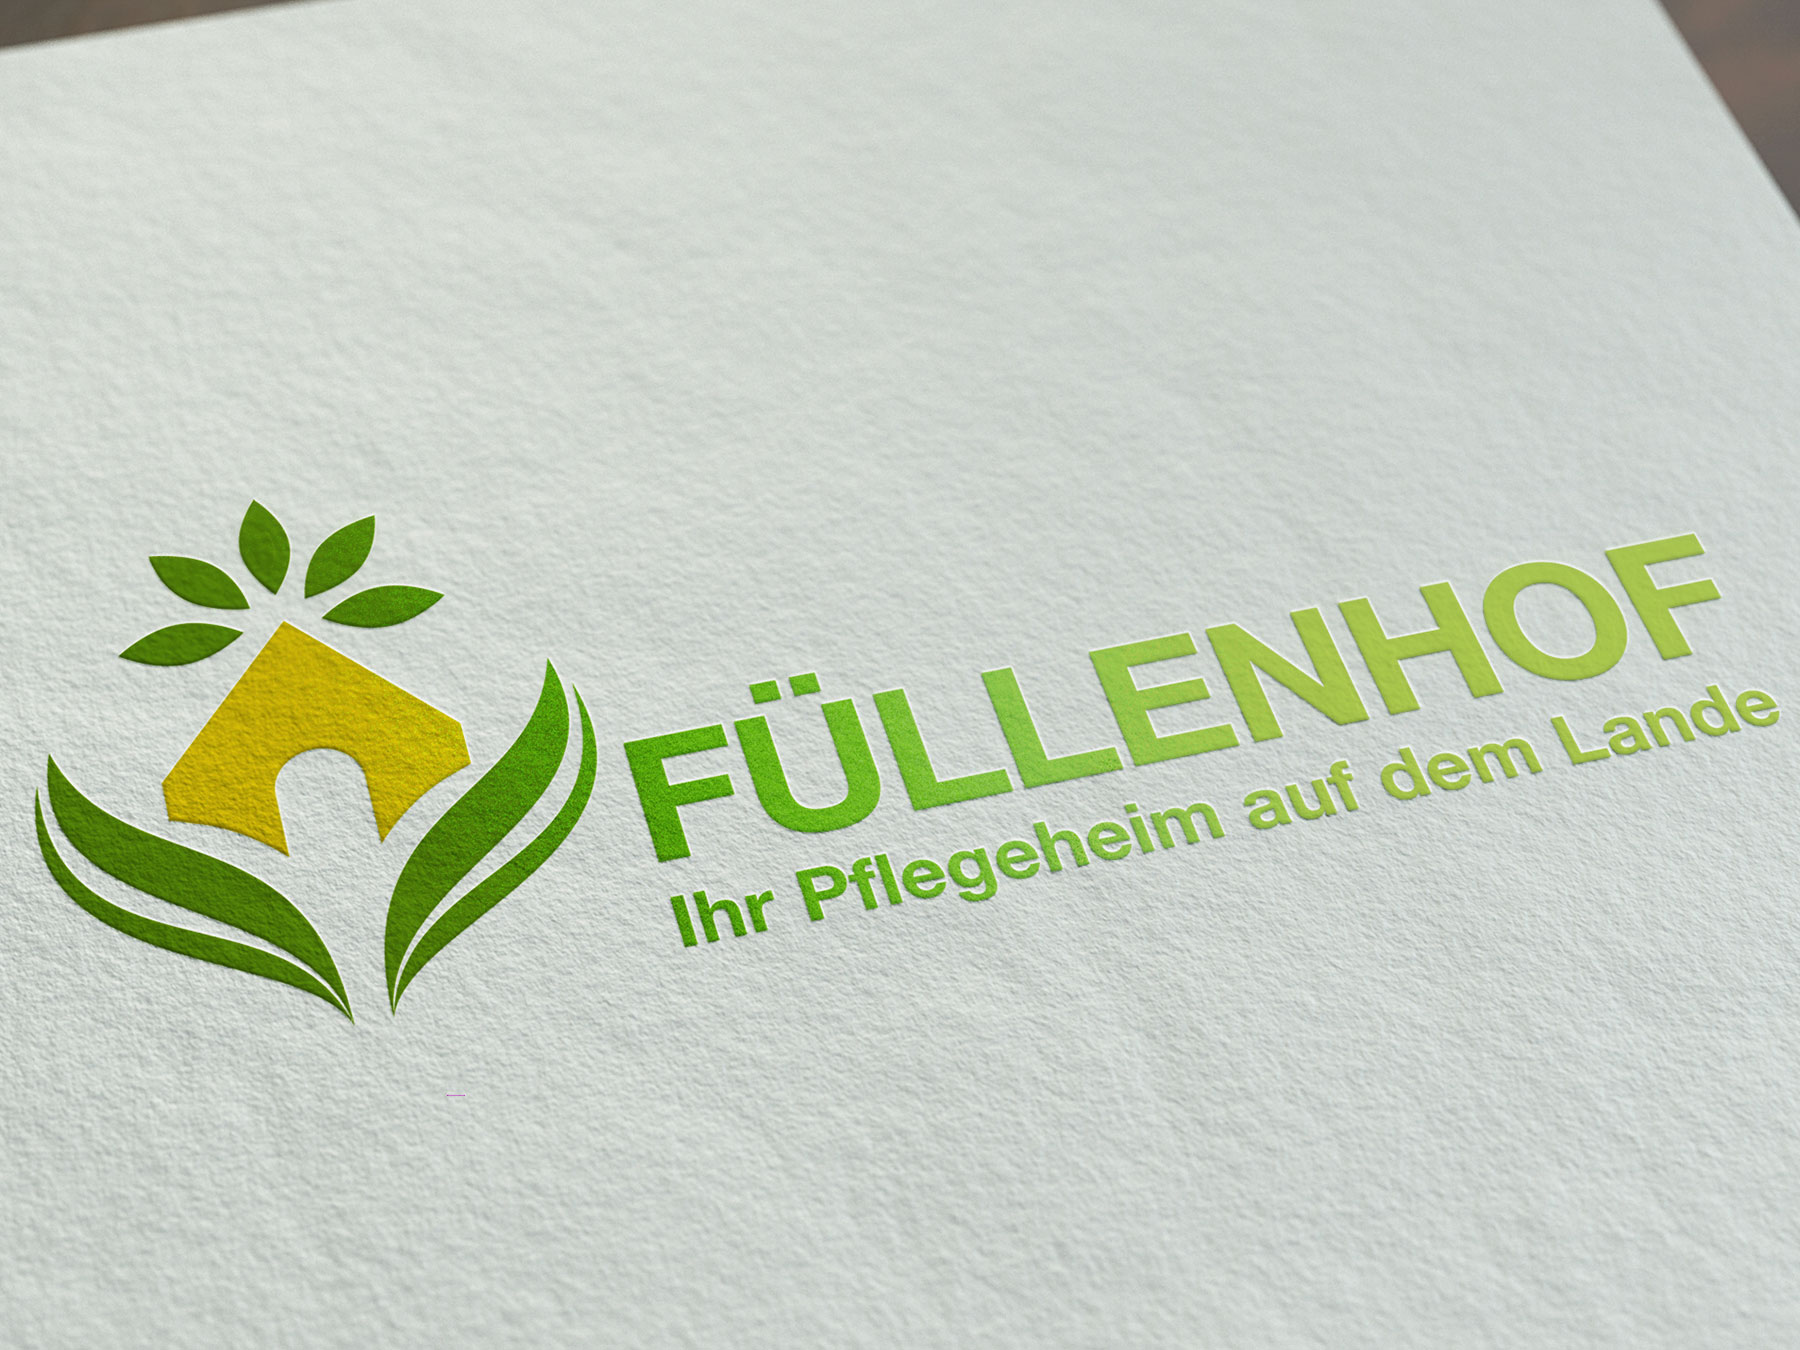 AuD Referenzen Füllenhof Logo Design